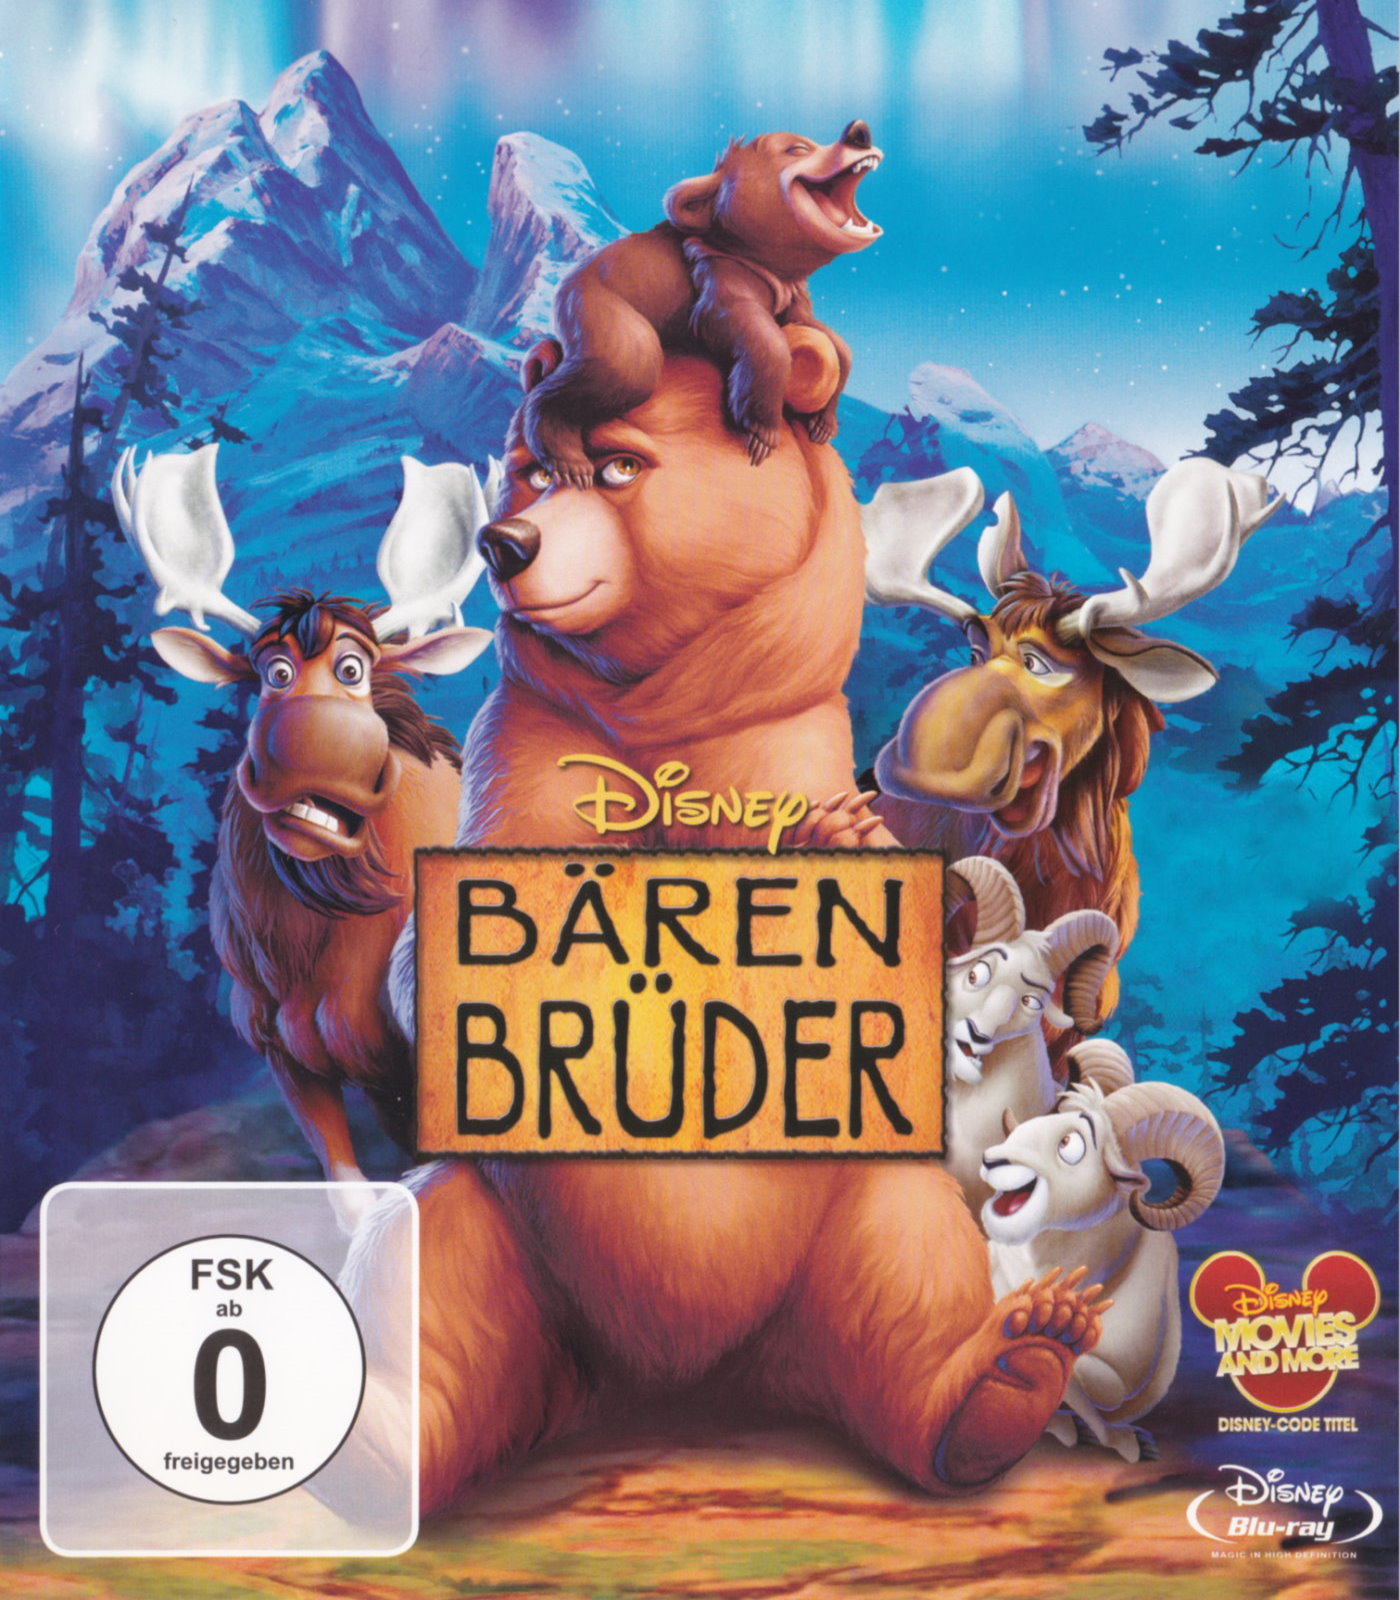 Cover - Bärenbrüder.jpg